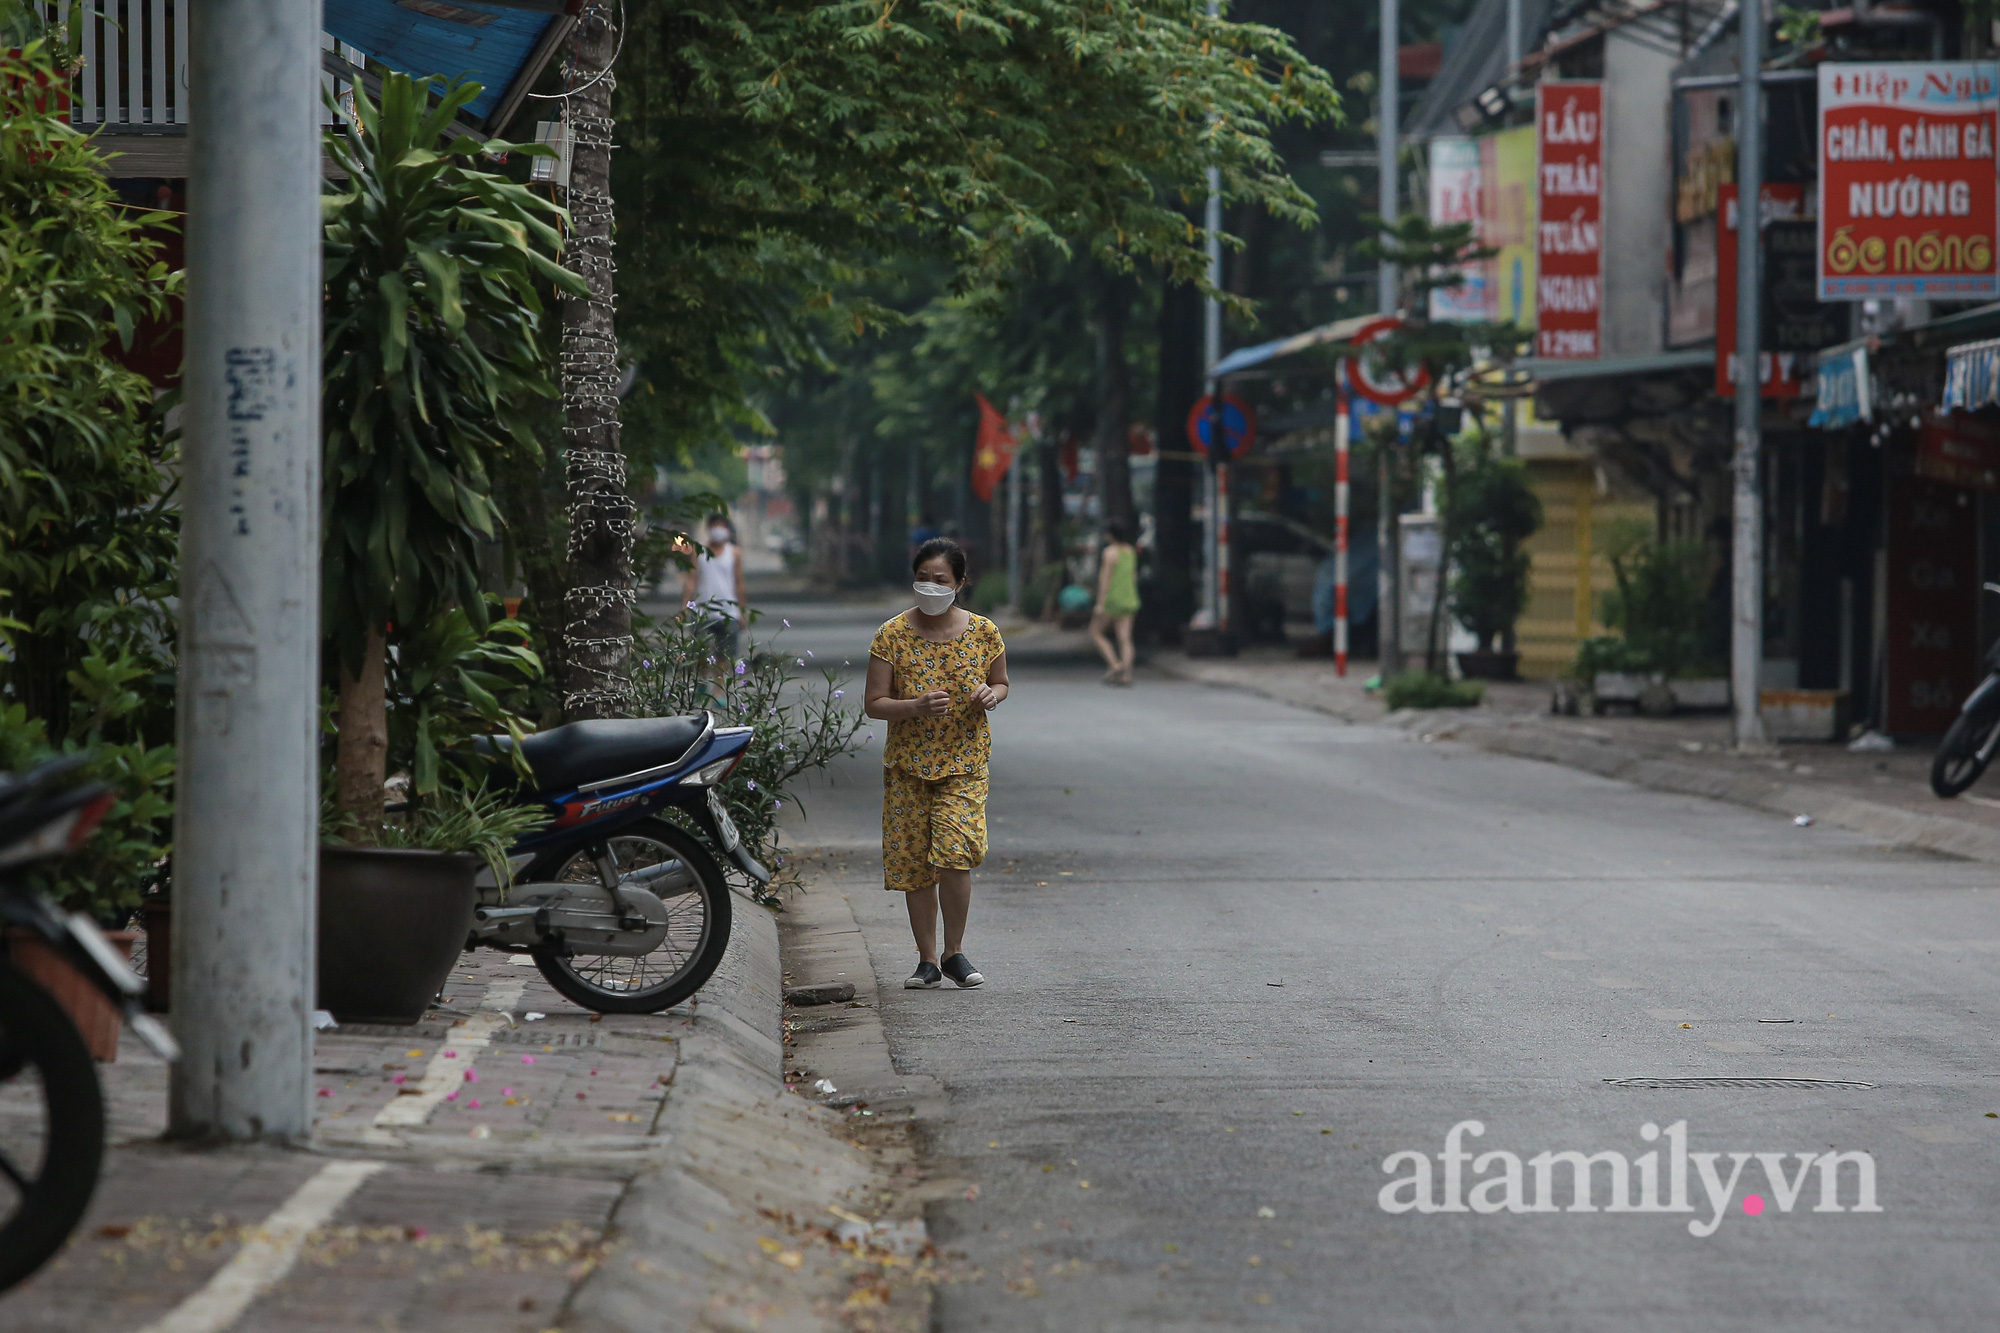 Hà Nội ngày thứ 17 giãn cách xã hội, nhiều người dân vẫn ra đường tập thể dục buổi sáng, có người treo quả bí đỏ trước xe để đạp xe đạp - Ảnh 5.